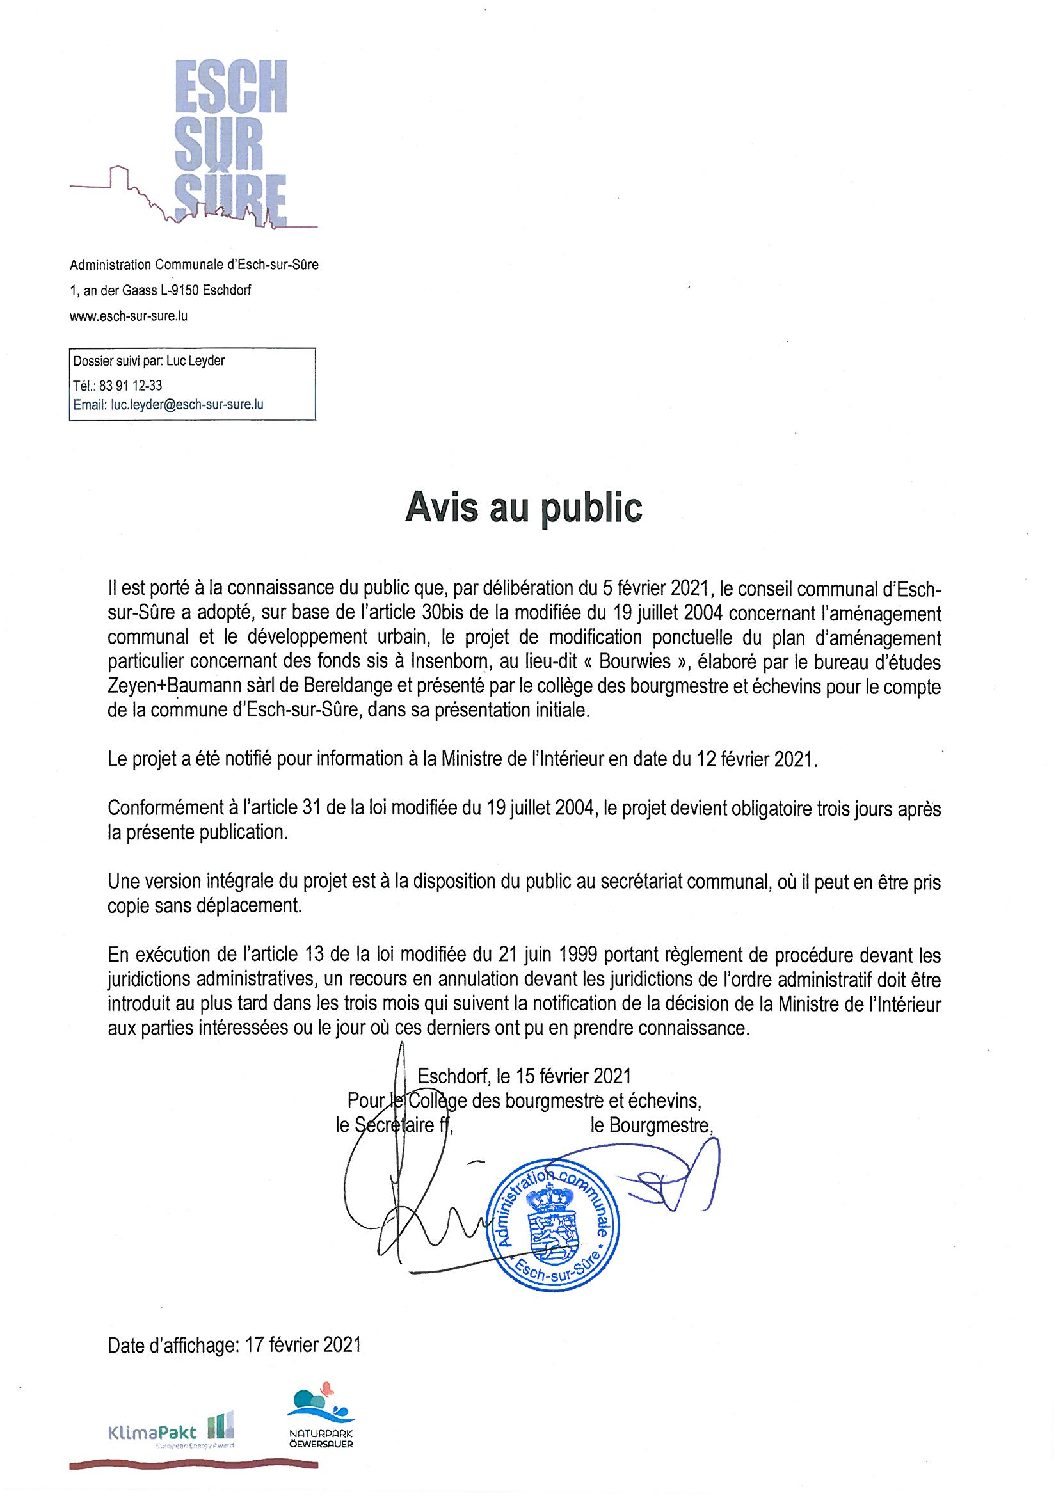 2021.02.17_Avis au public-Adoption du PAP concernant des fonds sis à Insenborn (Bourwies)